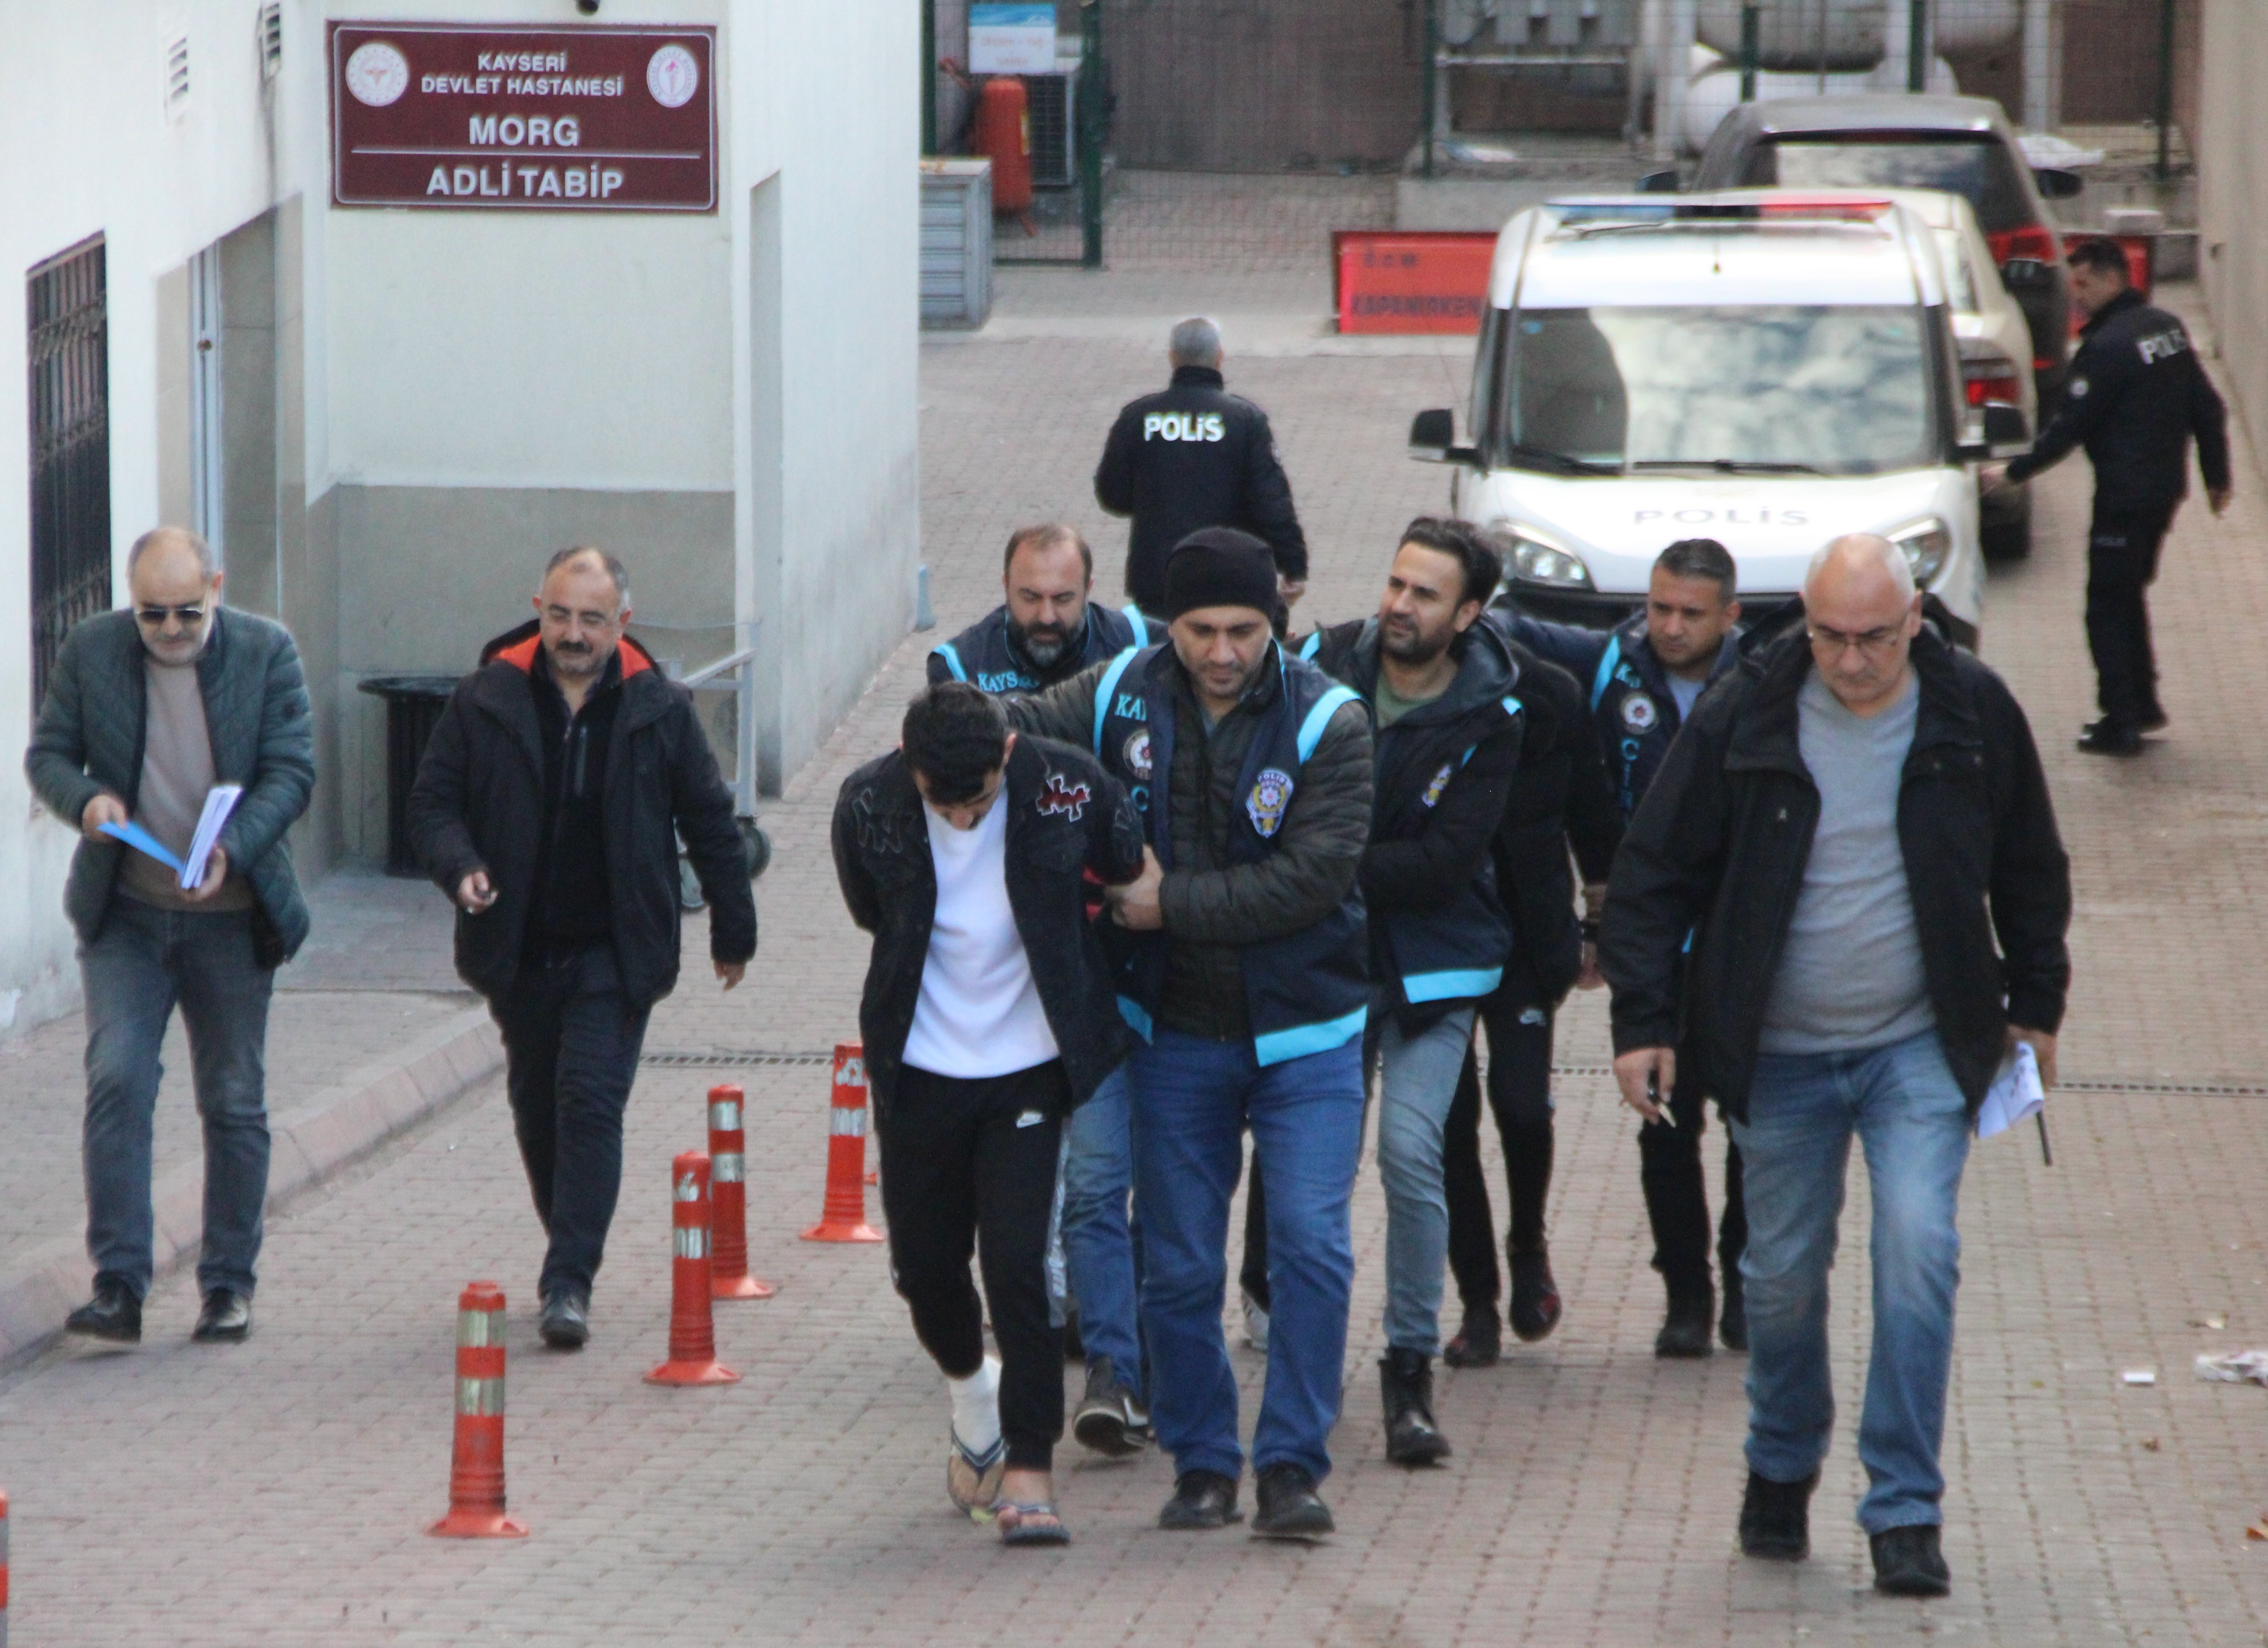 Kayseri'de 2 kardeşin katil zanlısı yakalandı